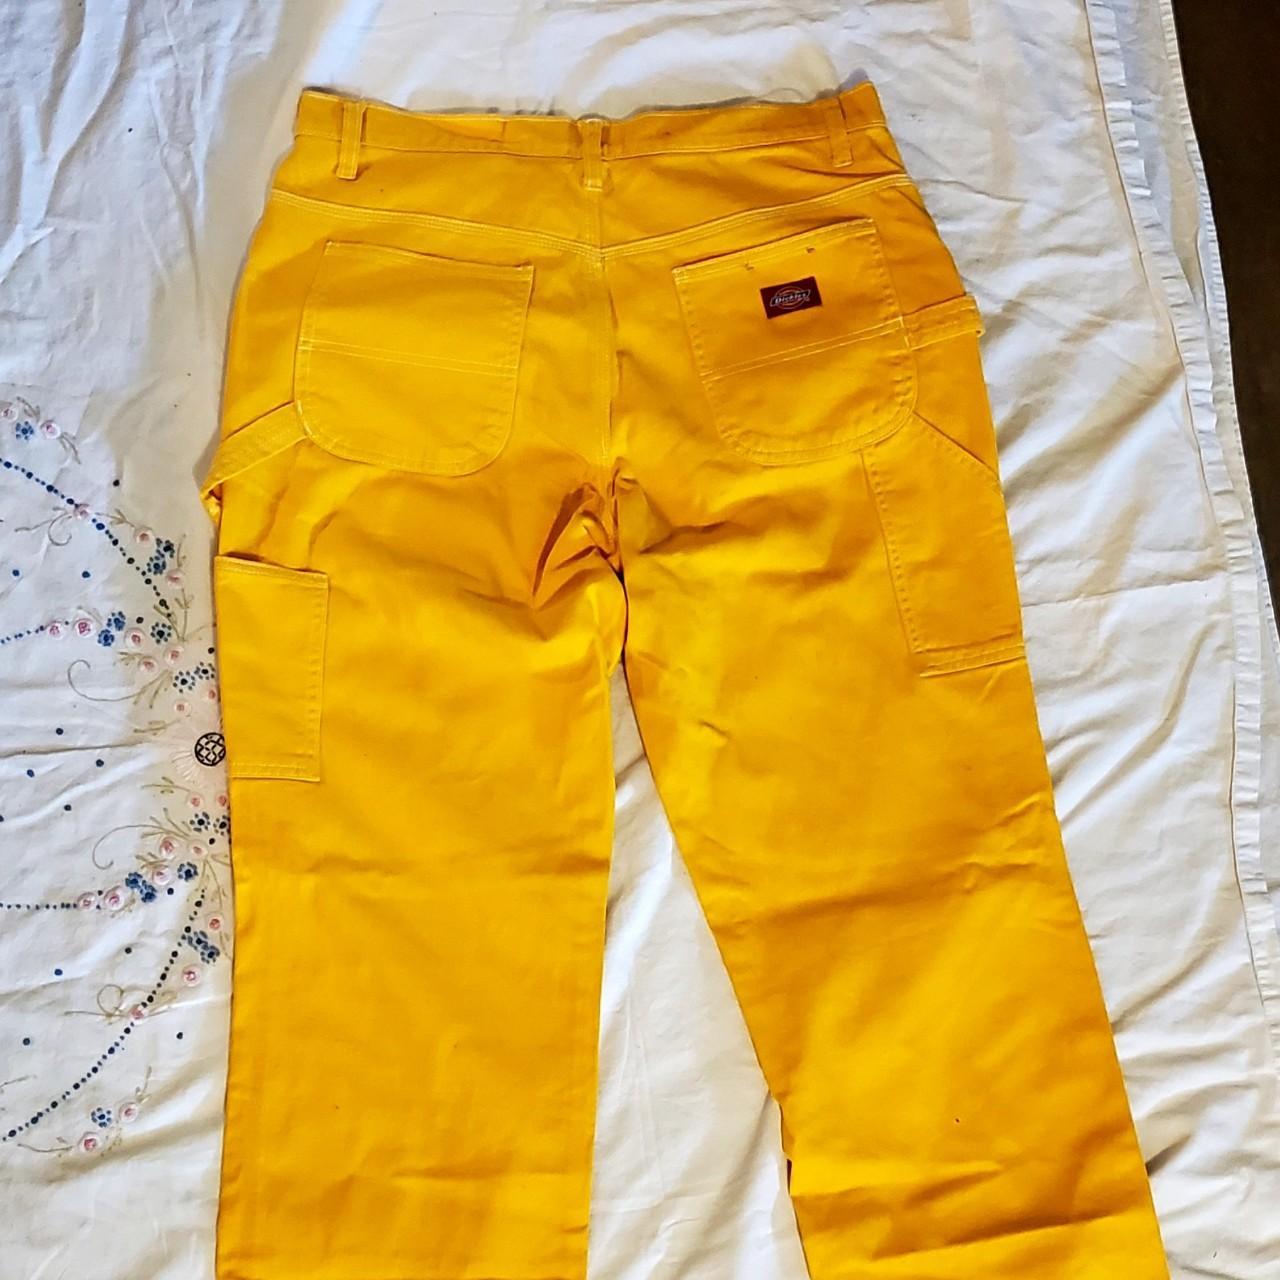 Yellow dickies carpenter pants 😊 so cute and brand... - Depop